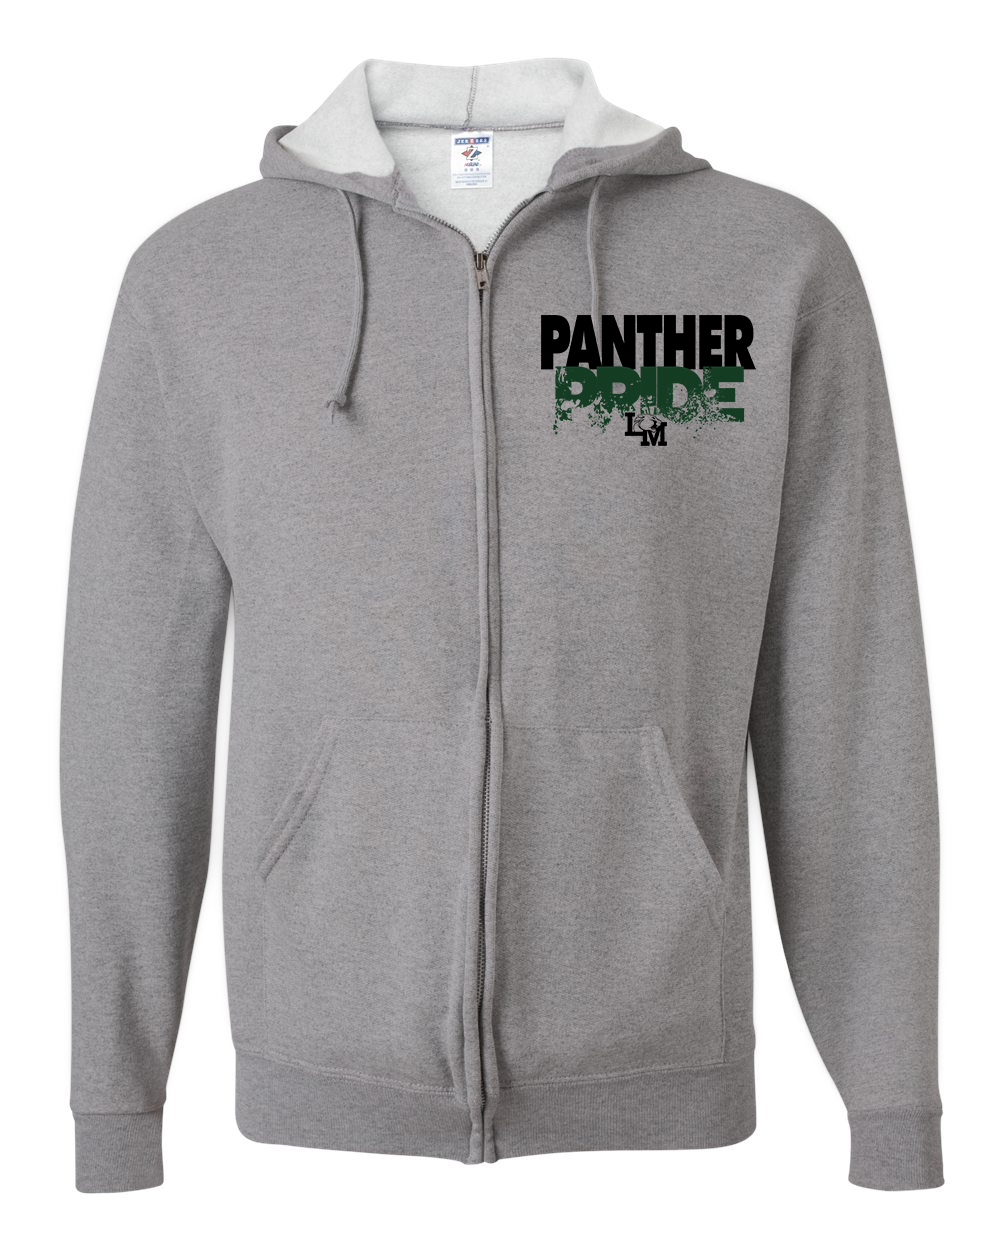 panthers full zip hoodie